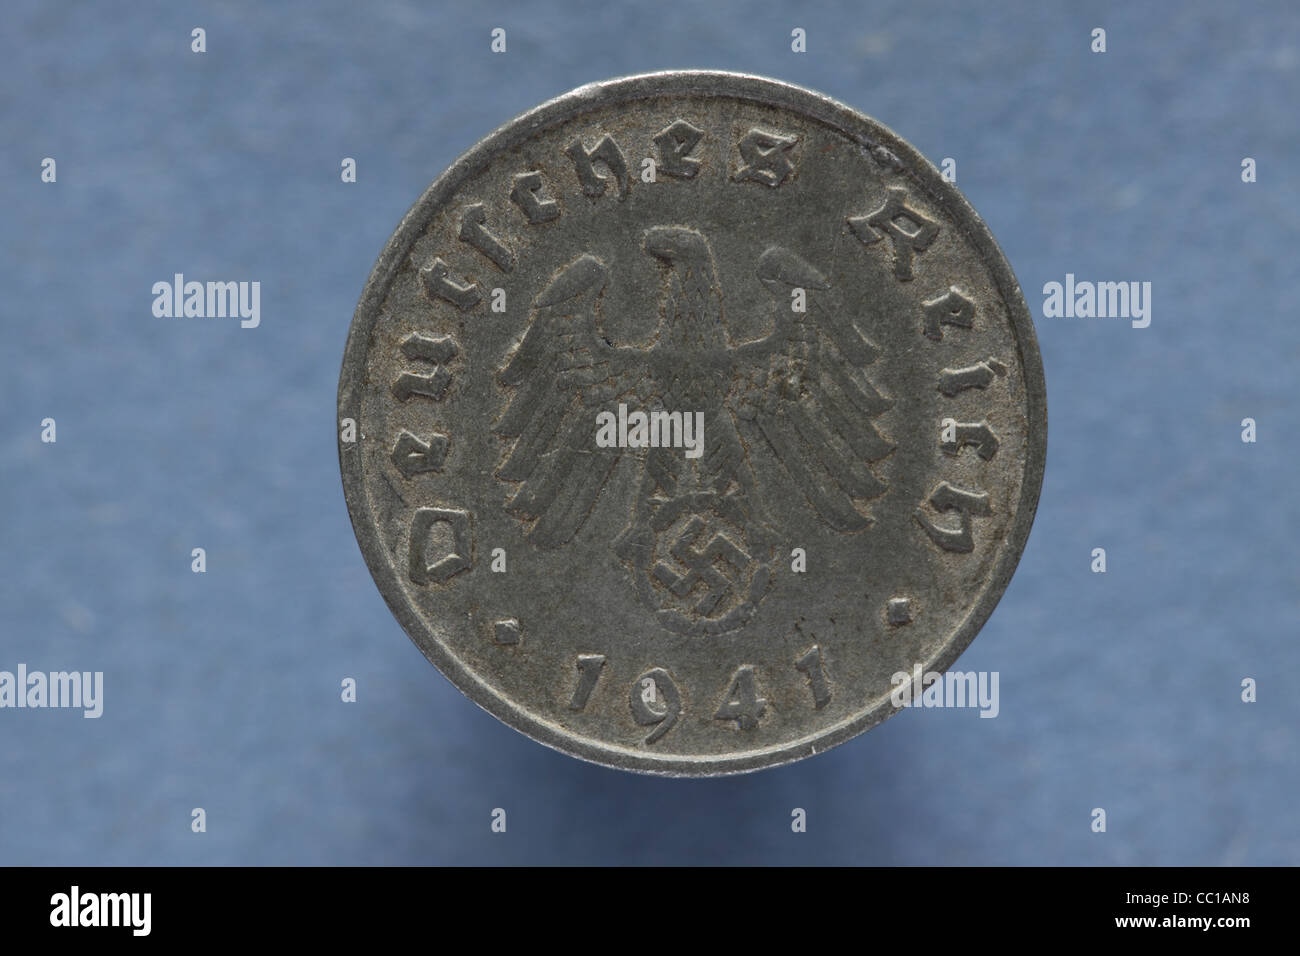 Nazi Germany 1941 Deutrches Reich 10 Reichspfennig coin money made of zinc Stock Photo